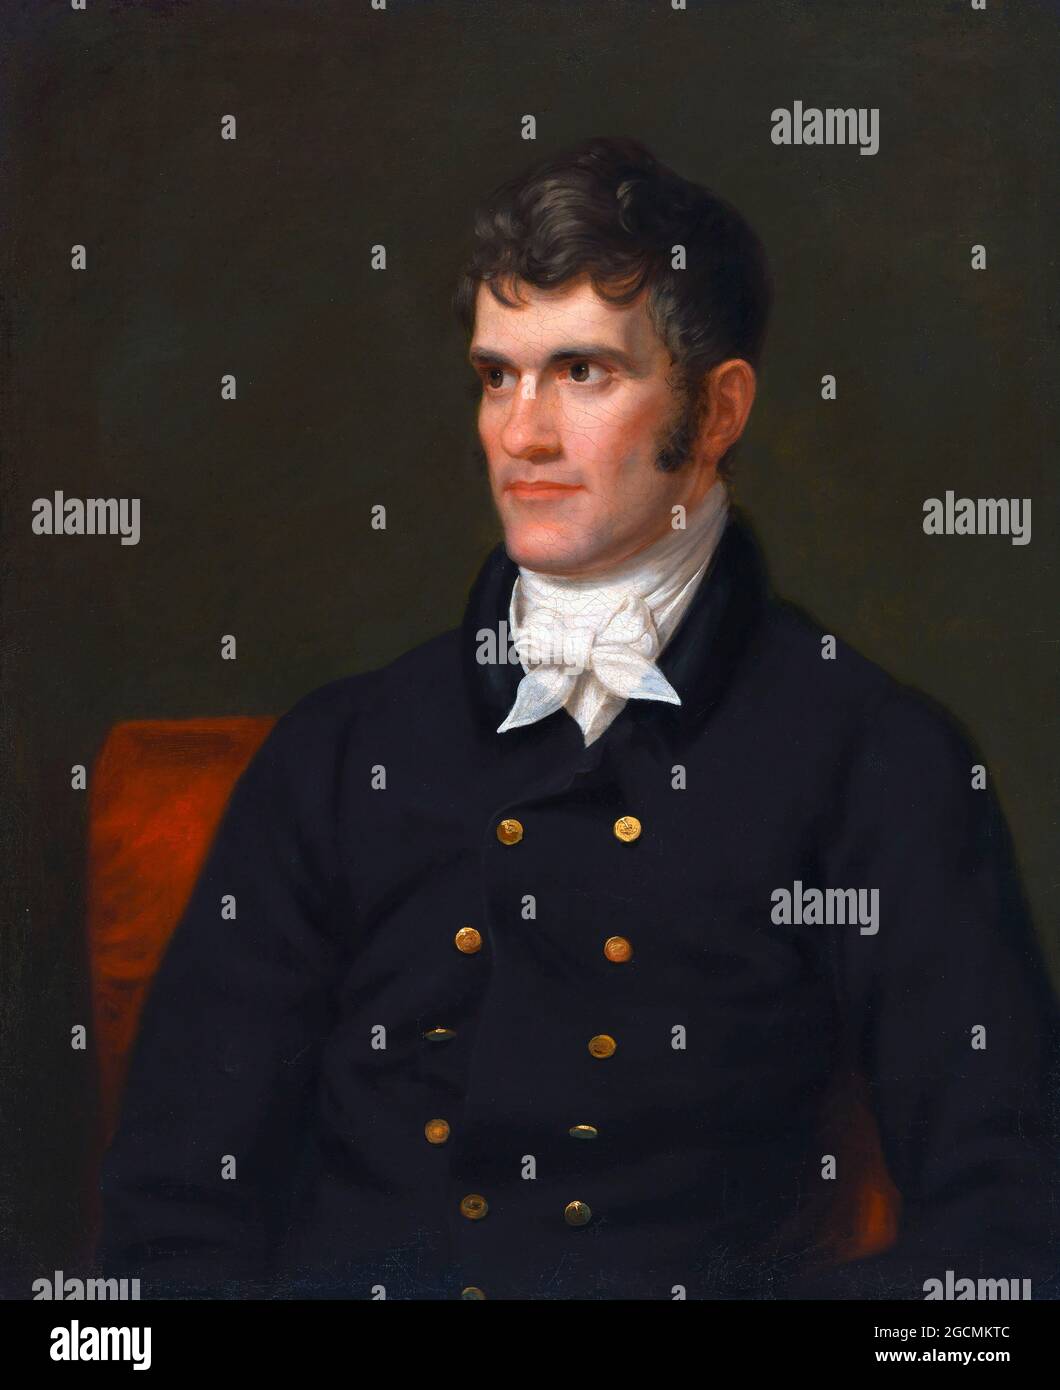 John C Calhoun (1782-1850), portrait de Charles Bird King (1785-1862) huile sur toile, 1845. Calhoun était un homme d'État américain de Caroline du Sud, qui a été vice-président des États-Unis à deux reprises. Il était un ardent défenseur de l'esclavage et avançait le concept des droits des minorités en politique, Banque D'Images